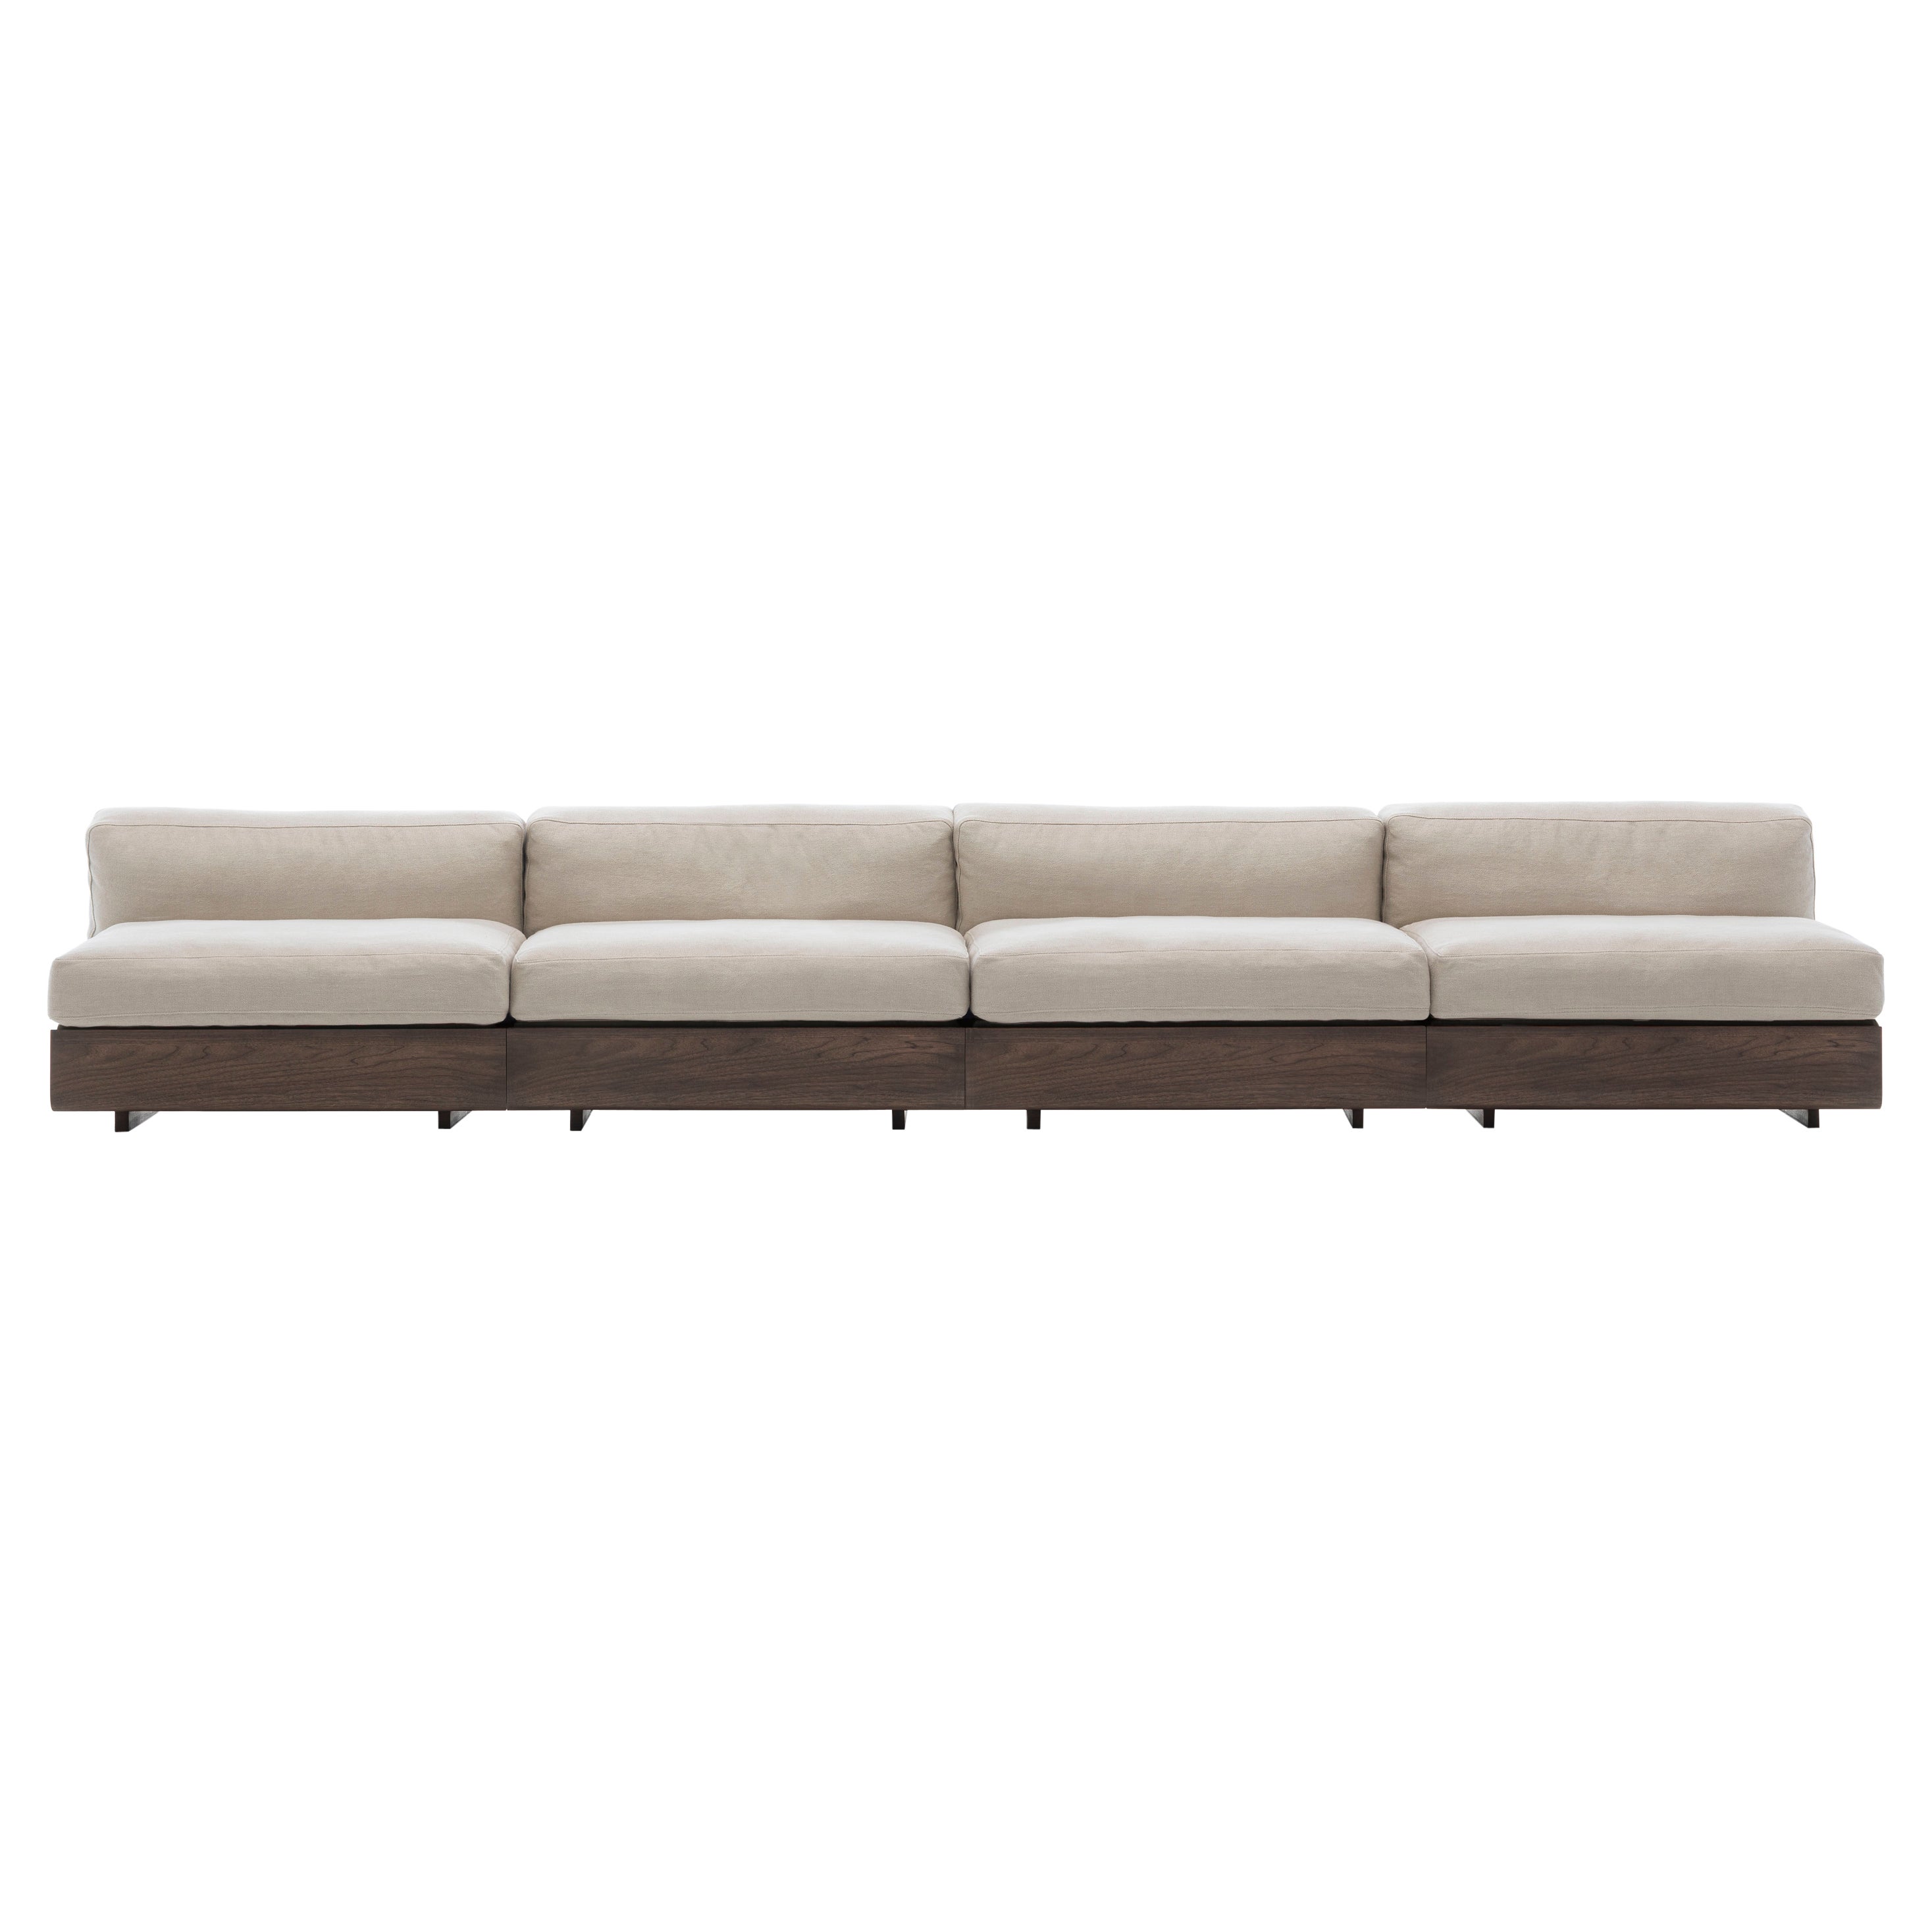 Acerbis Life Sofa mit weißer Polsterung und dunkel gebeiztem Nussbaumgestell